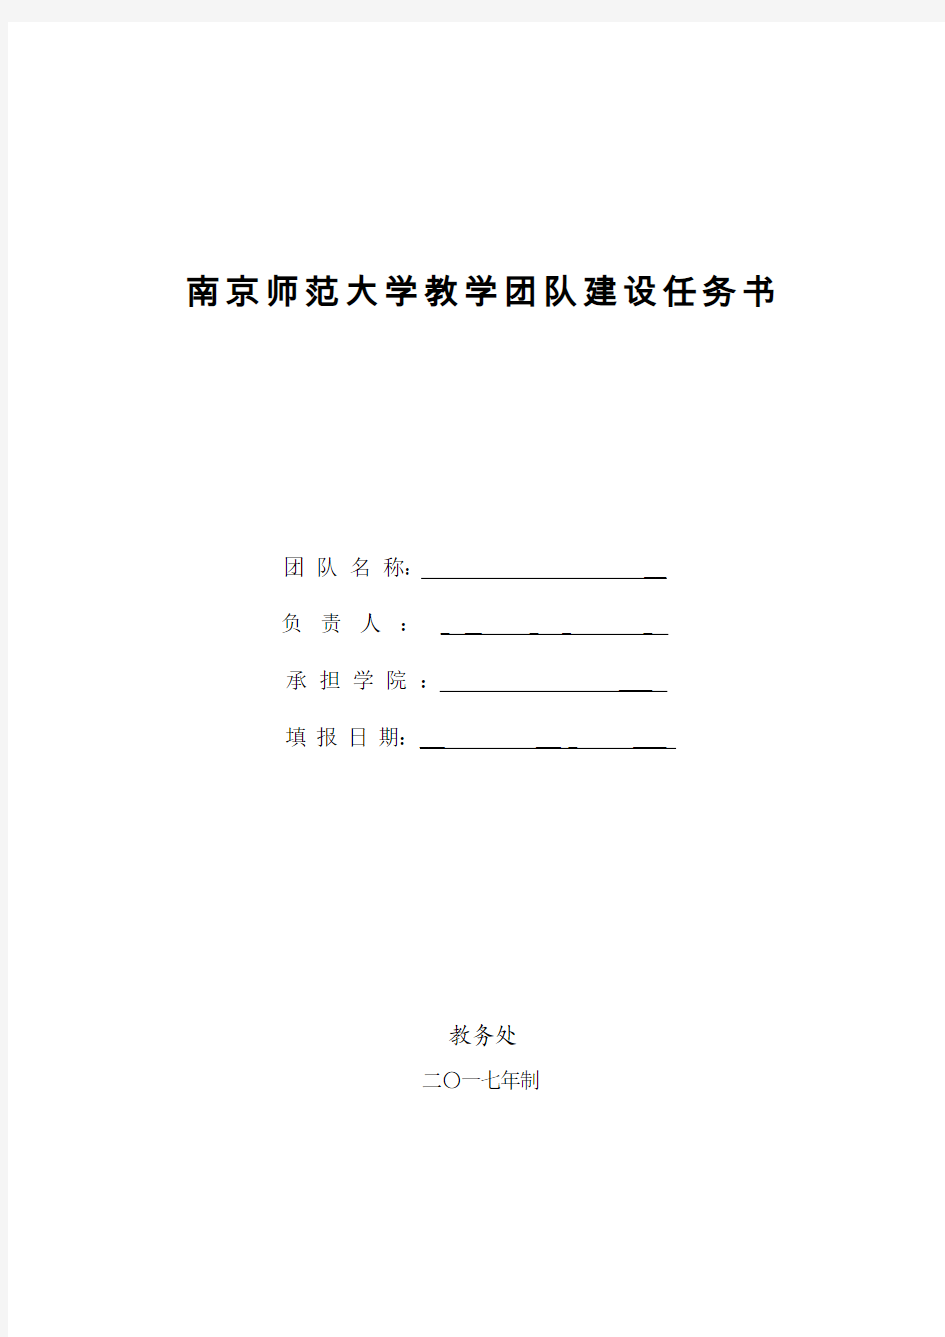 南京师范大学教学团队建设任务书